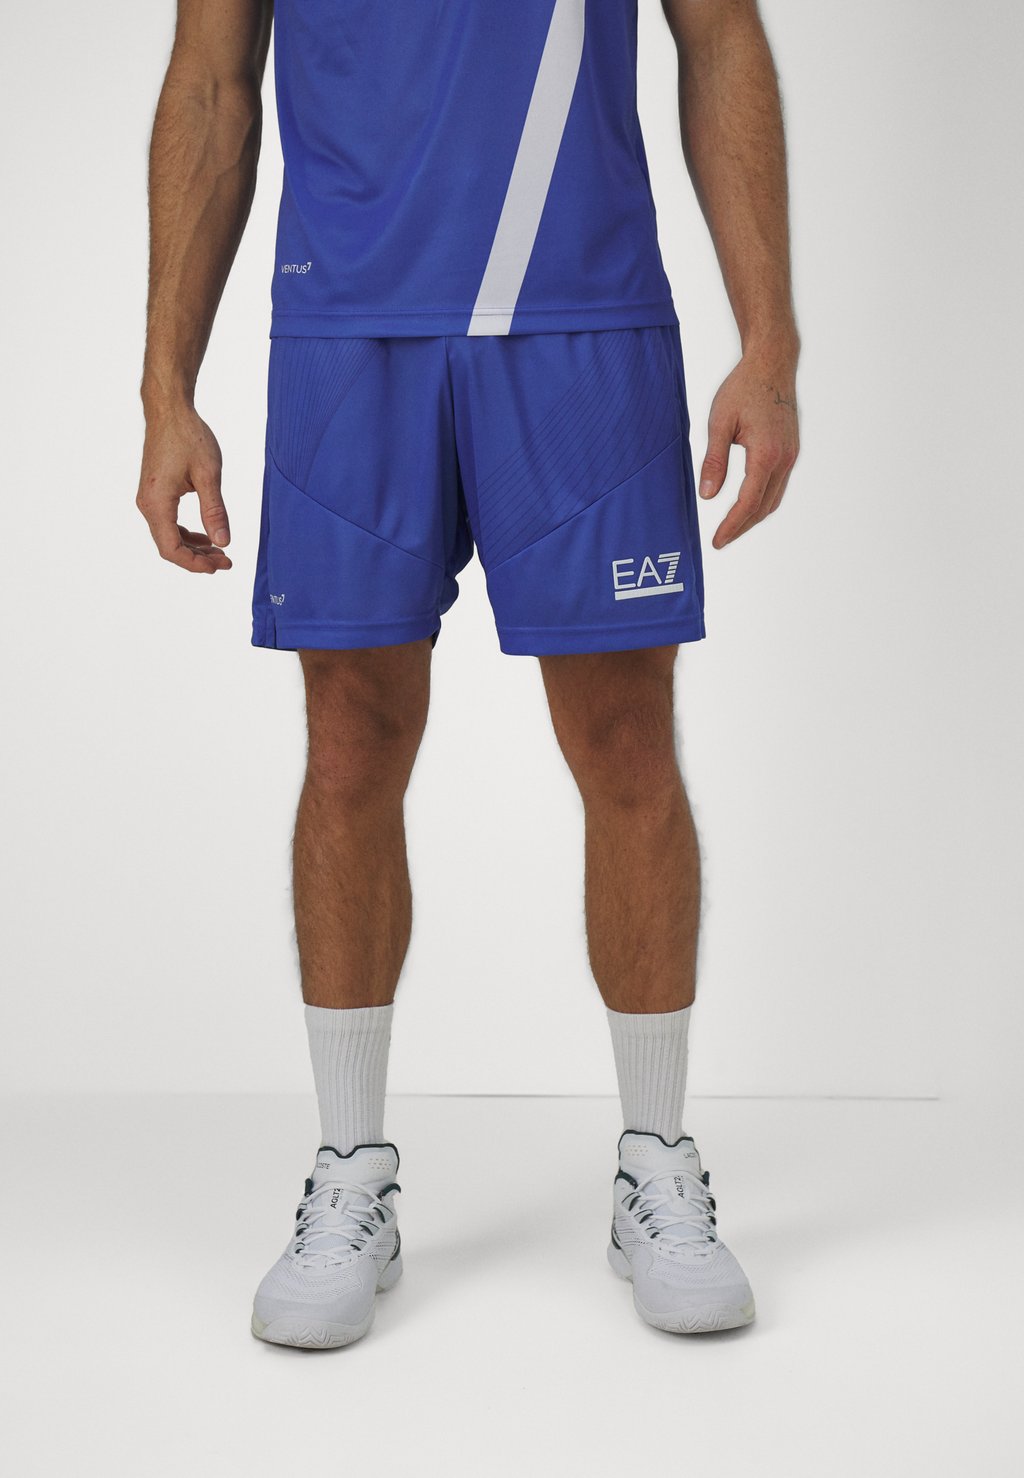 Спортивные шорты TENNIS PRO SHORTS GRAPHIC EA7 Emporio Armani, цвет marlin спортивные шорты tennis pro shorts ea7 emporio armani цвет navy blue